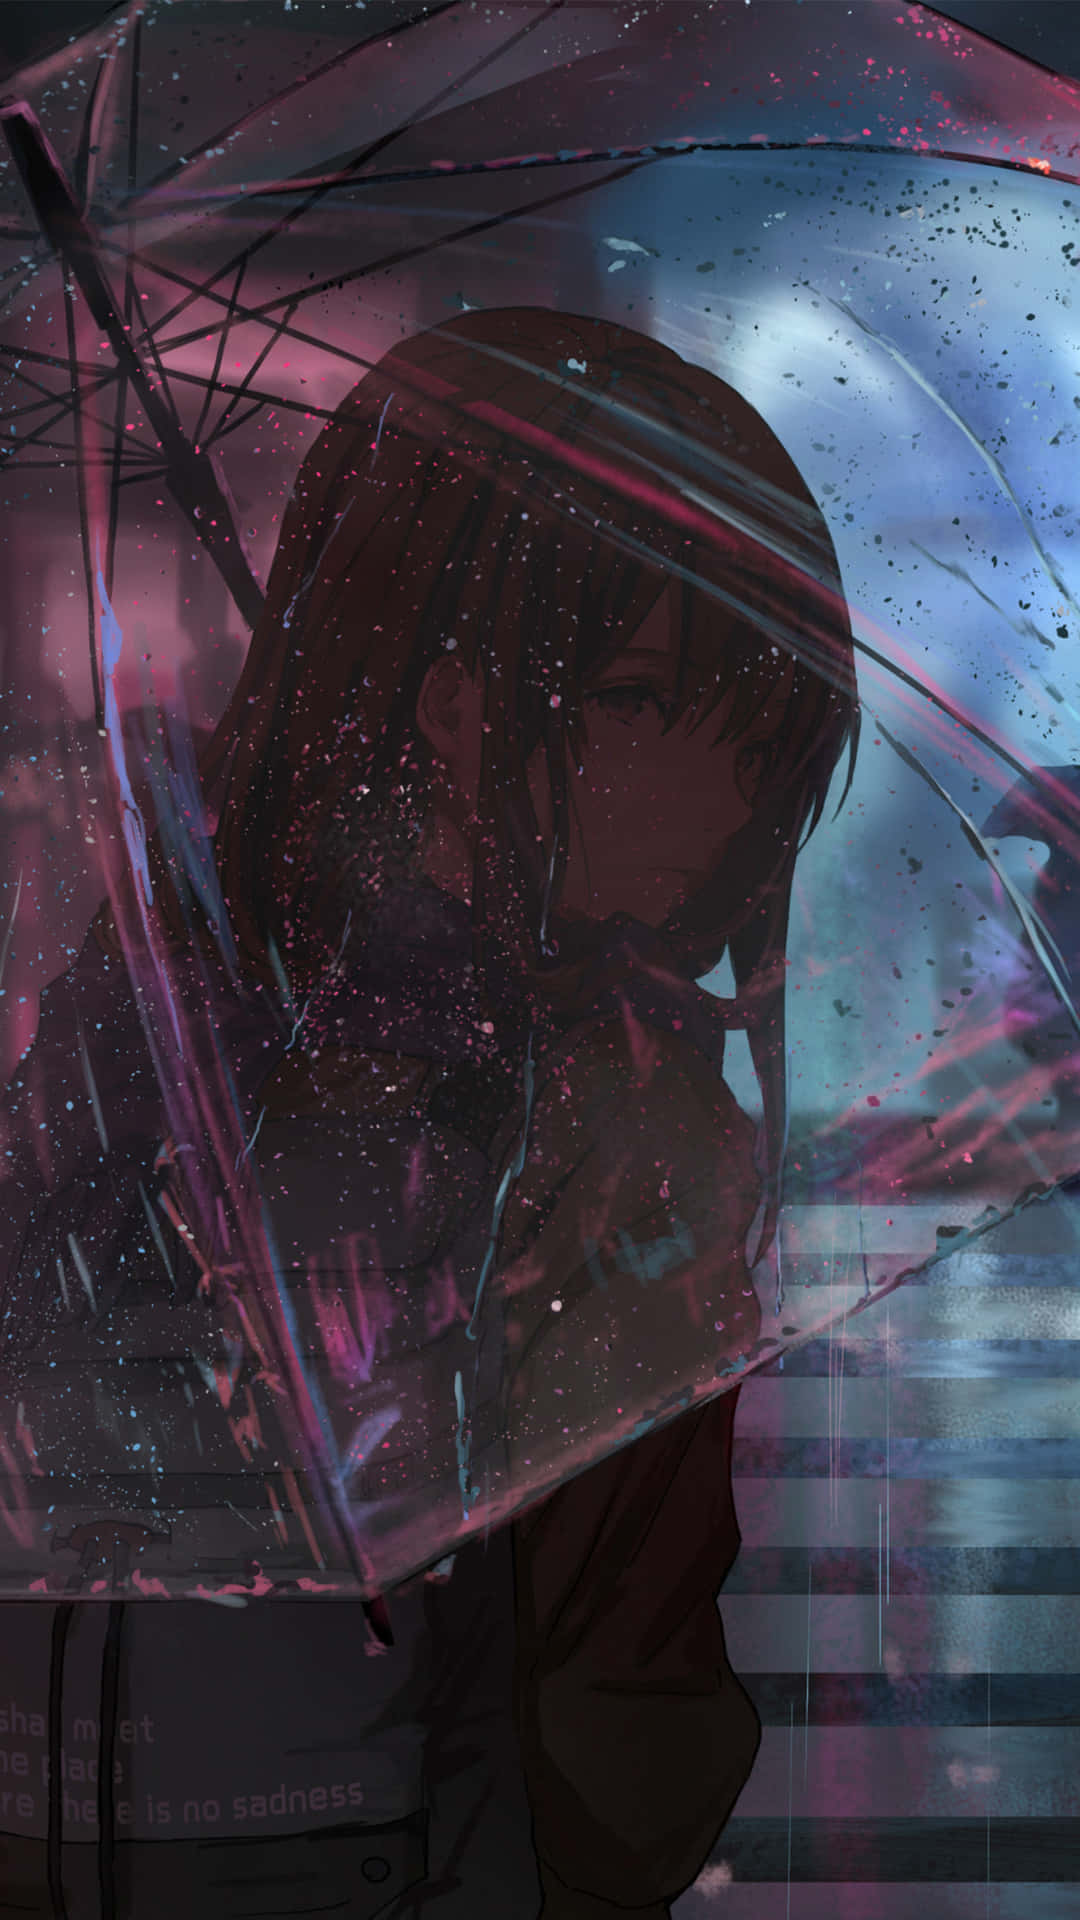 Sad Crying Anime Girl With An Umbrella Wallpaper